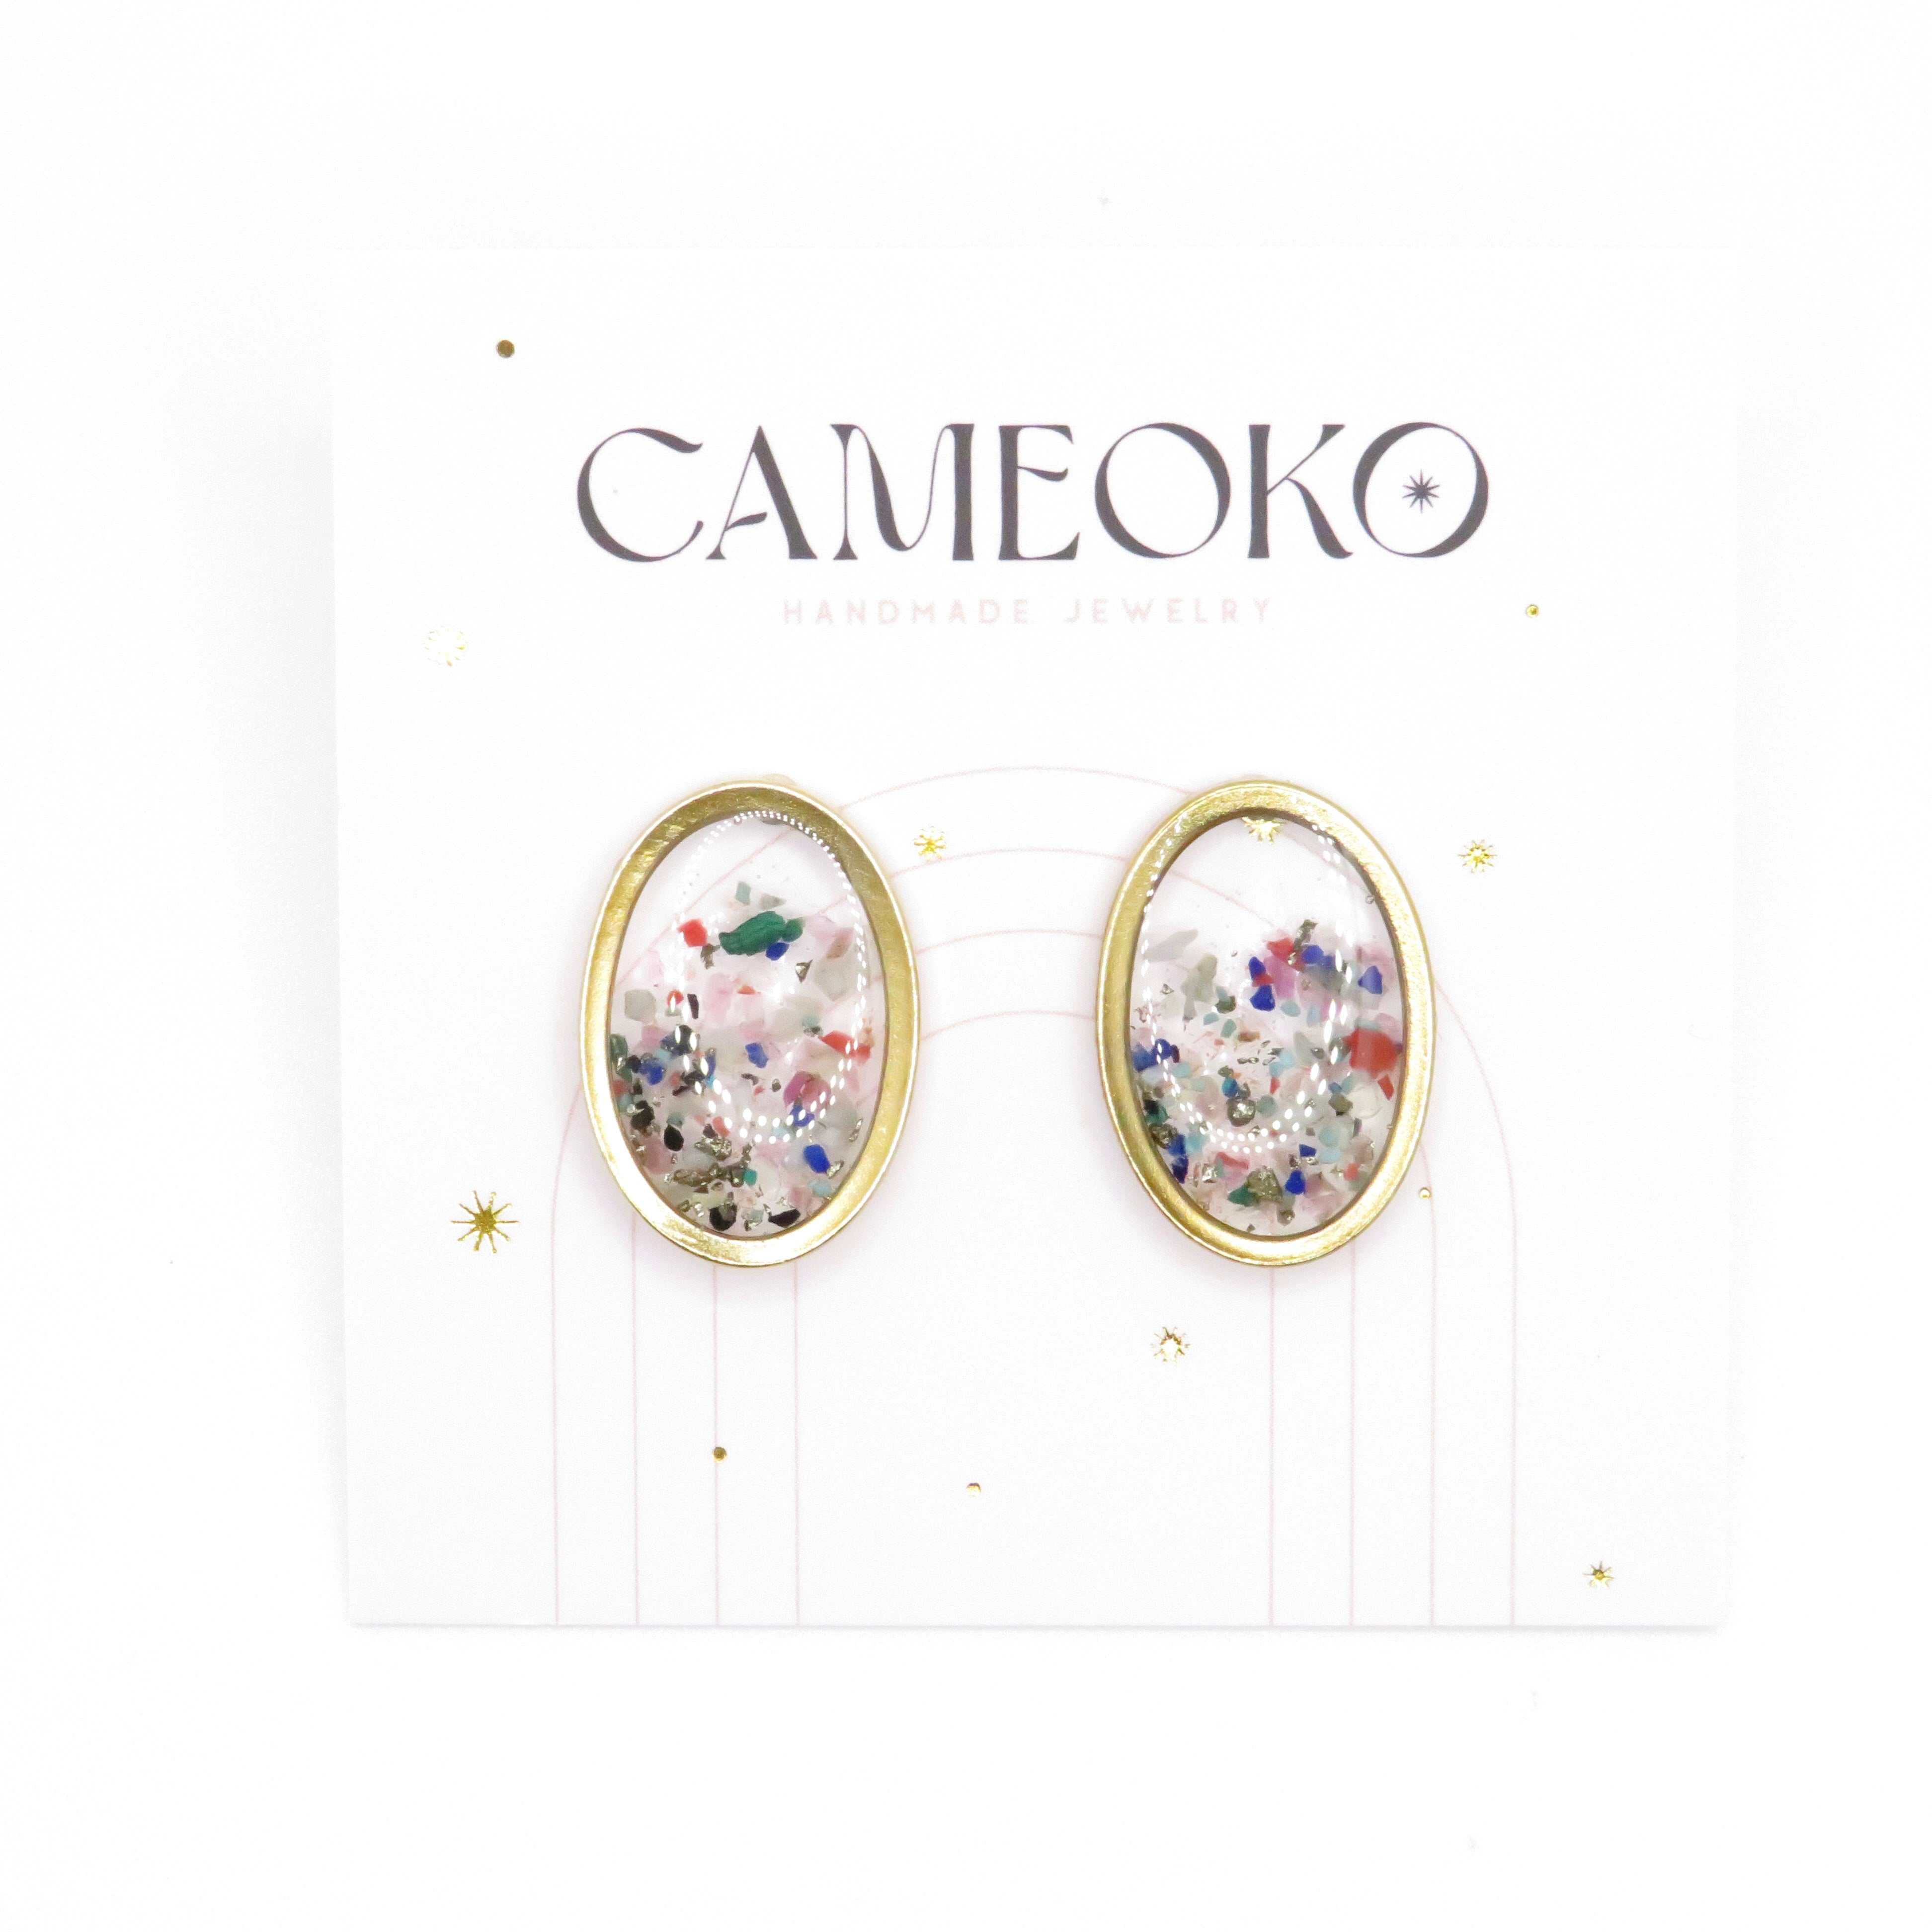 Oval gemstone post earrings